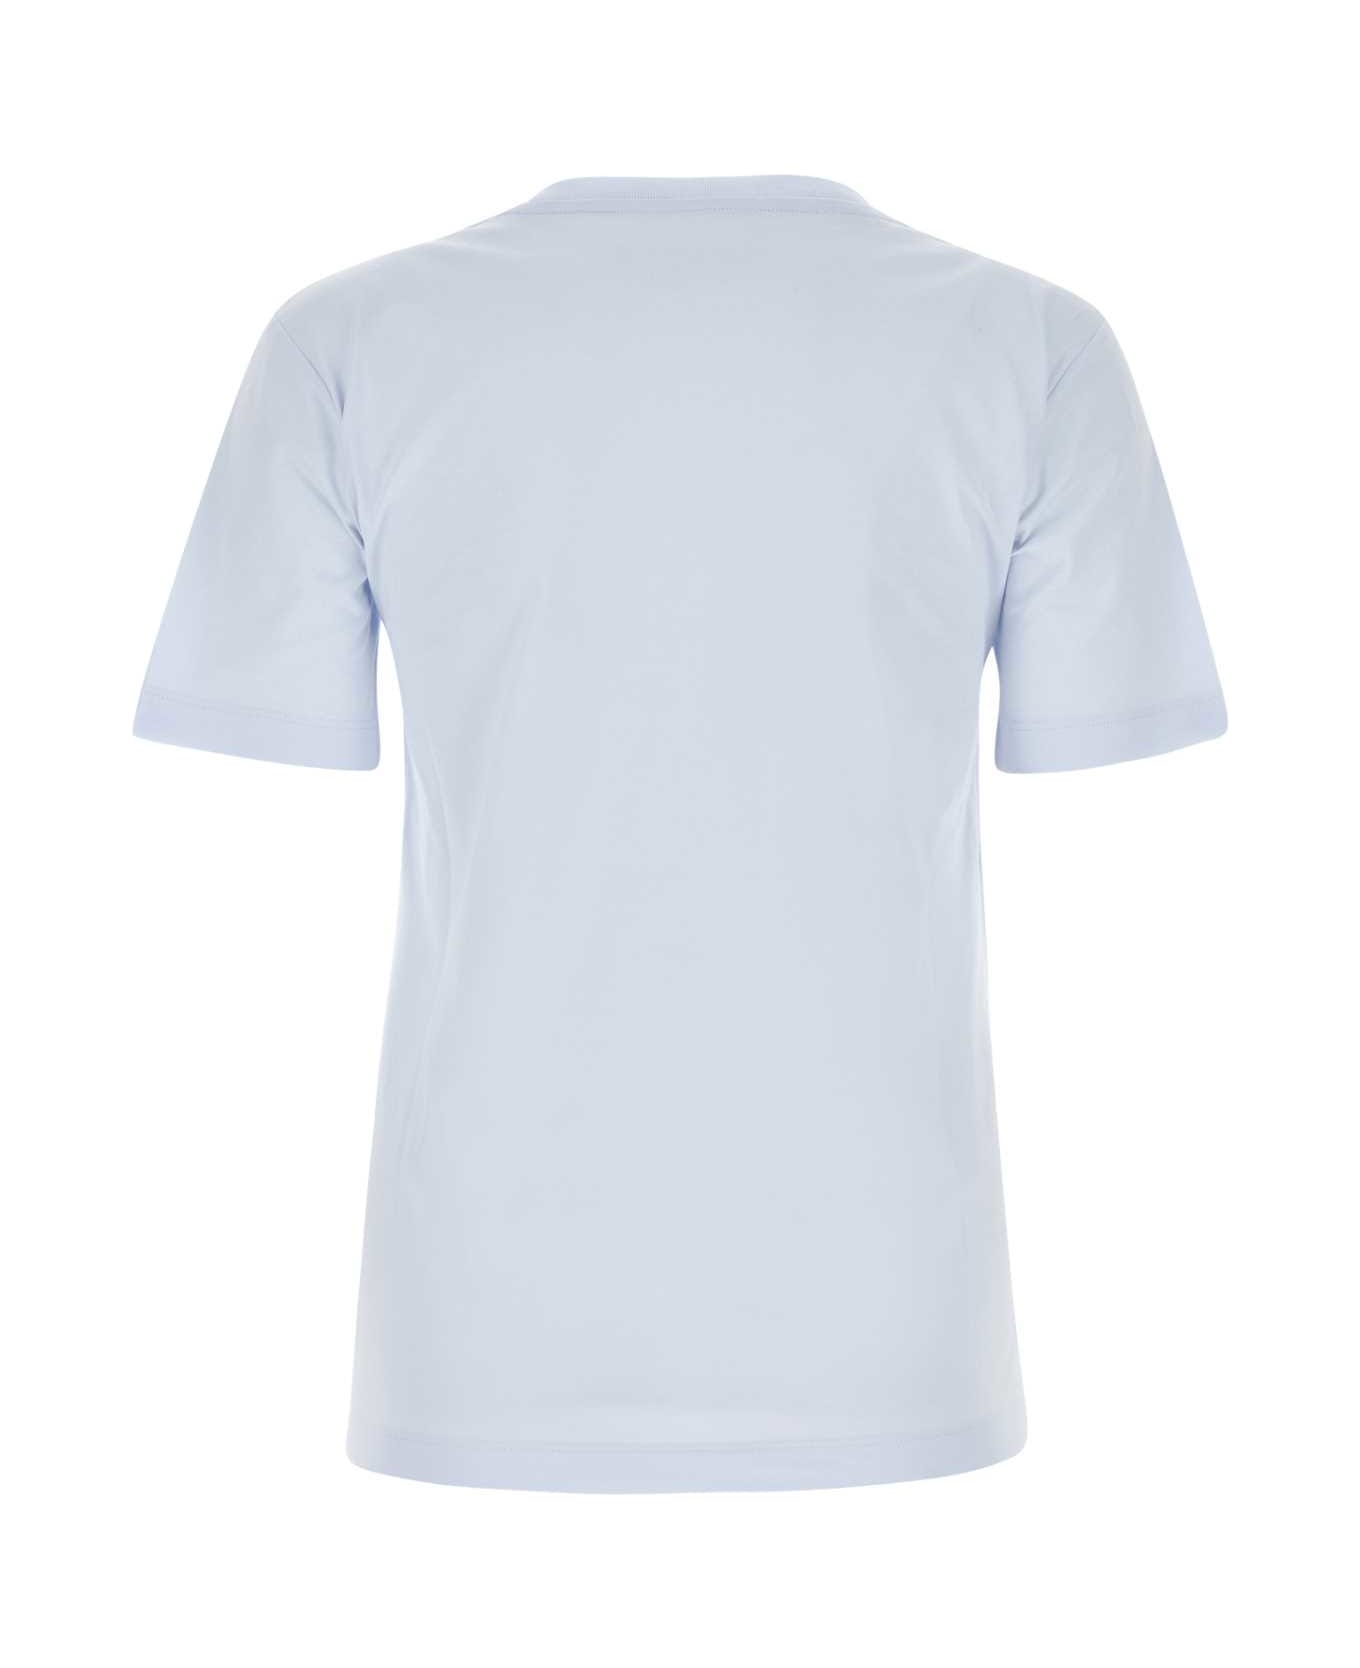 Marni Light Blue T-shirt With Marni Stitching - 00B21 Tシャツ